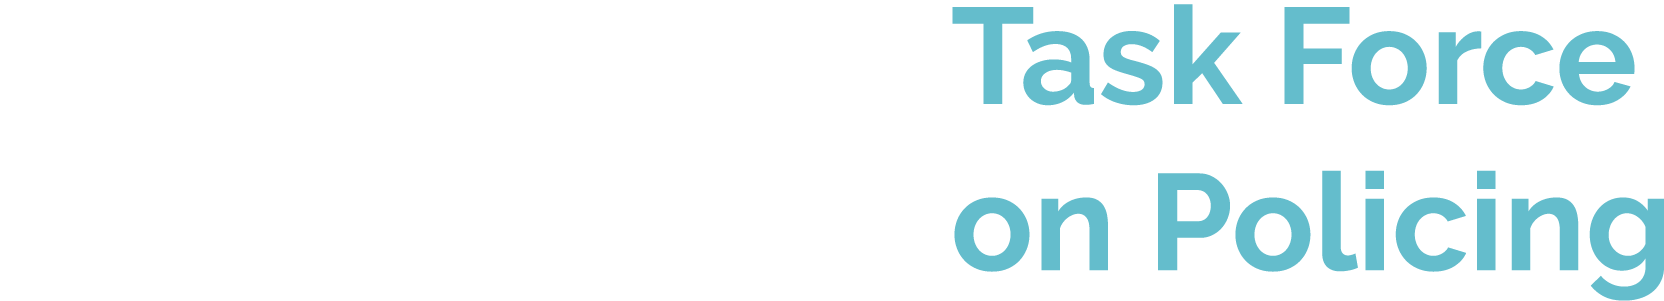 ccj-taskforce-logo-halfreverse